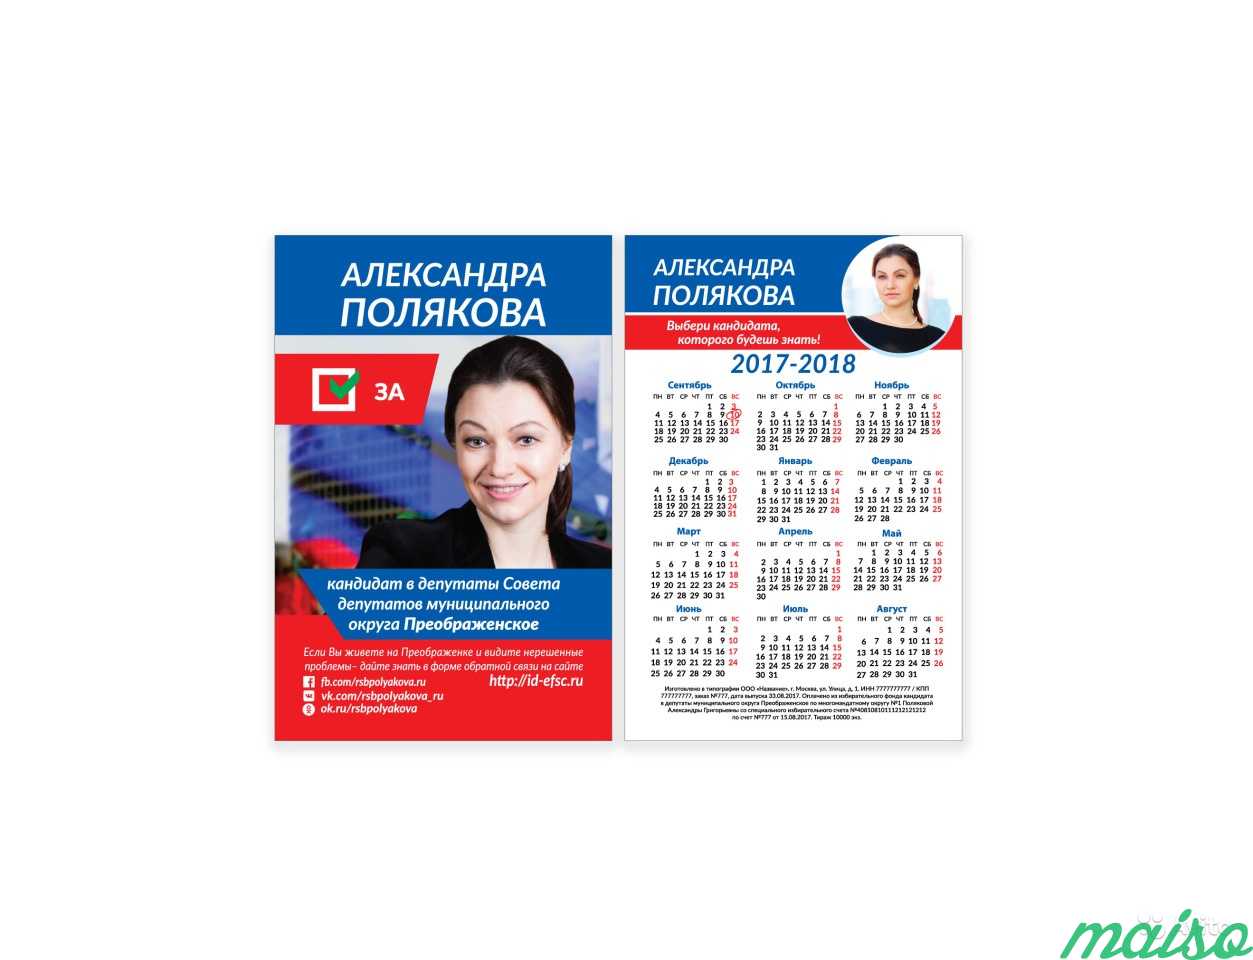 Дизайн логотипа, визитки, листовки в Москве. Фото 4